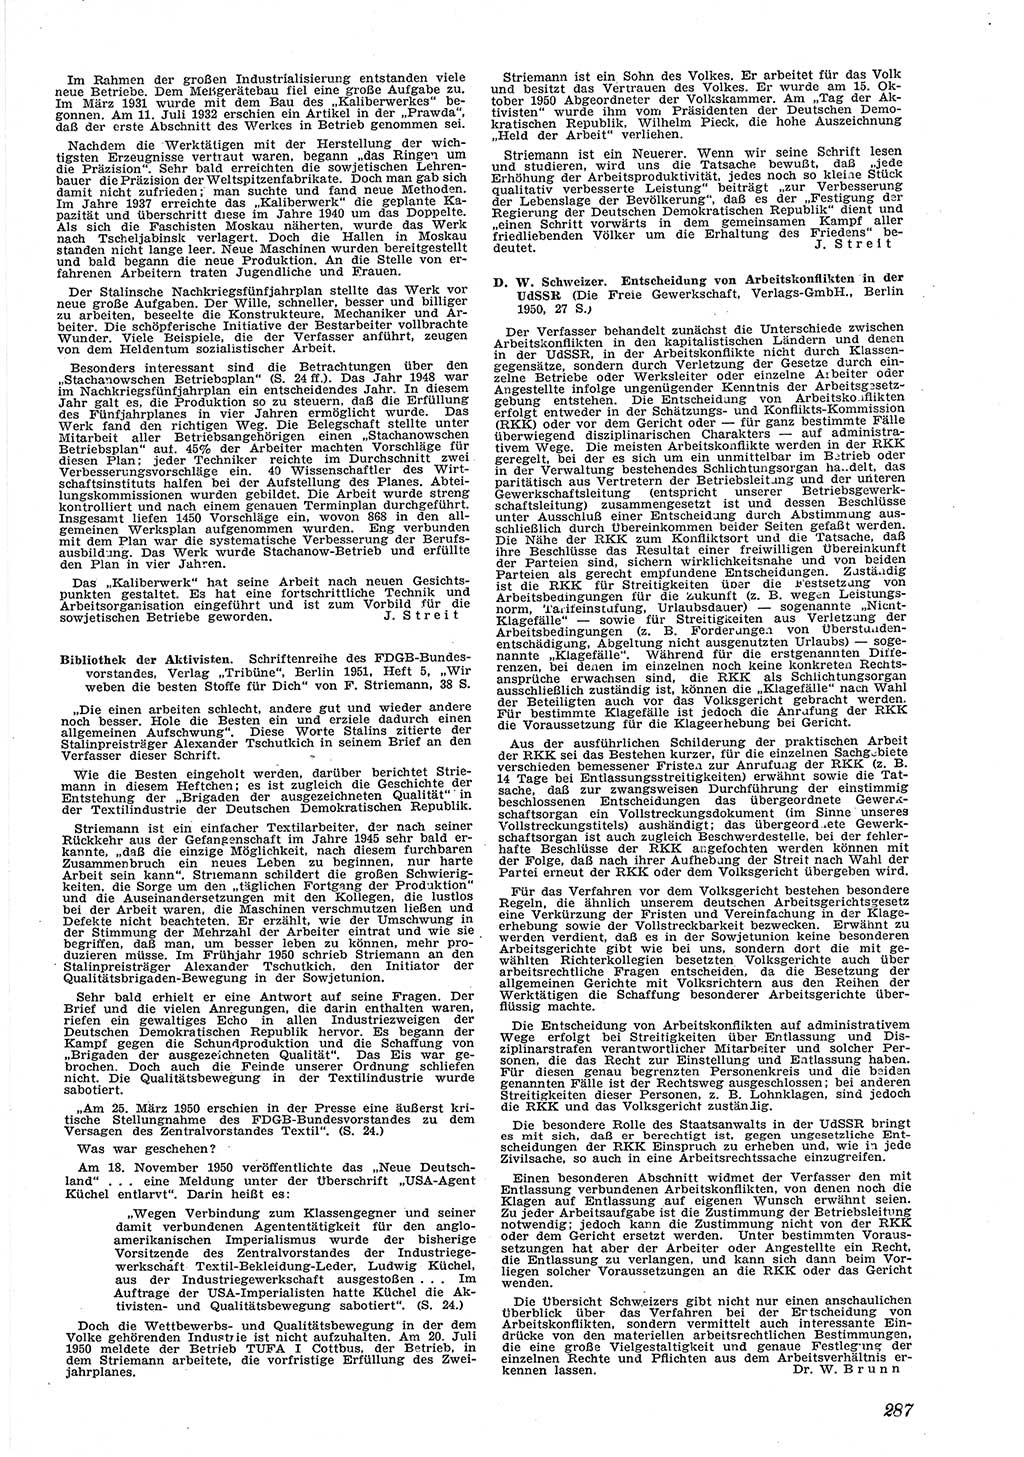 Neue Justiz (NJ), Zeitschrift für Recht und Rechtswissenschaft [Deutsche Demokratische Republik (DDR)], 5. Jahrgang 1951, Seite 287 (NJ DDR 1951, S. 287)